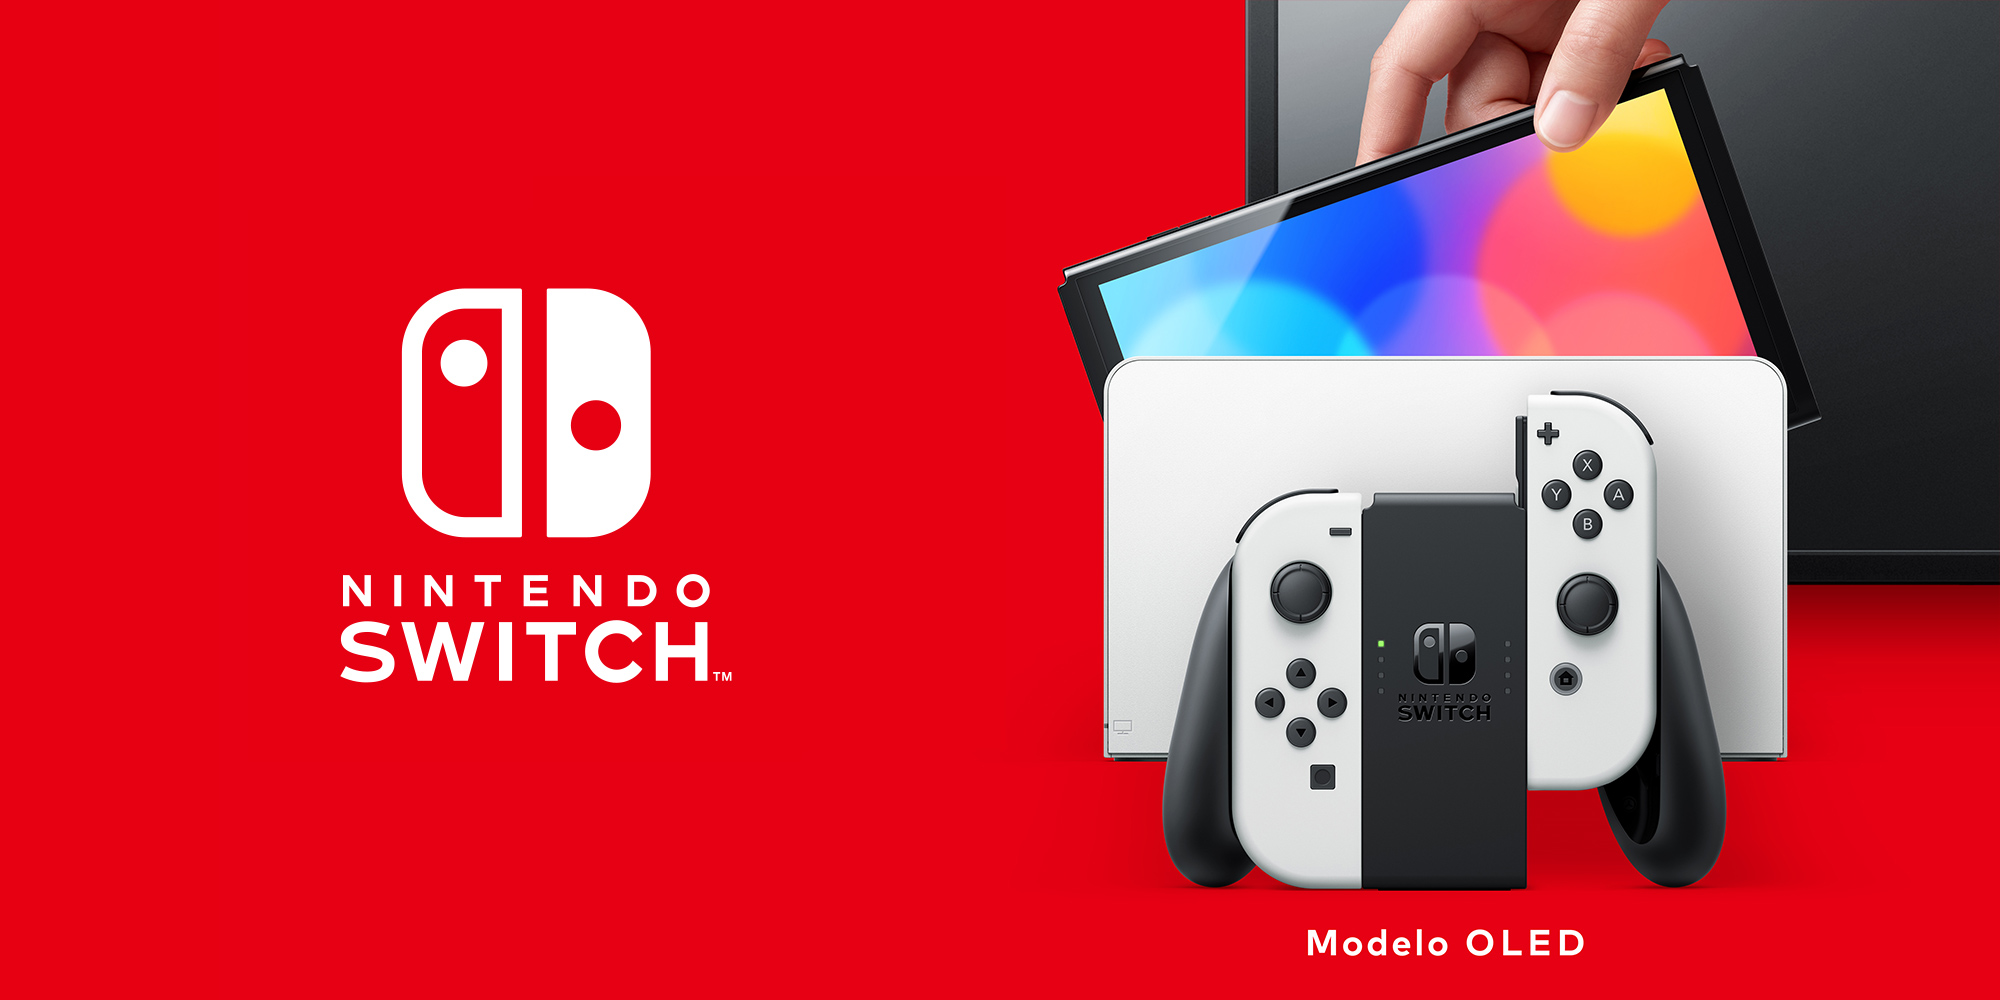 Nintendo Switch – Modelo OLED | Hardware Nintendo